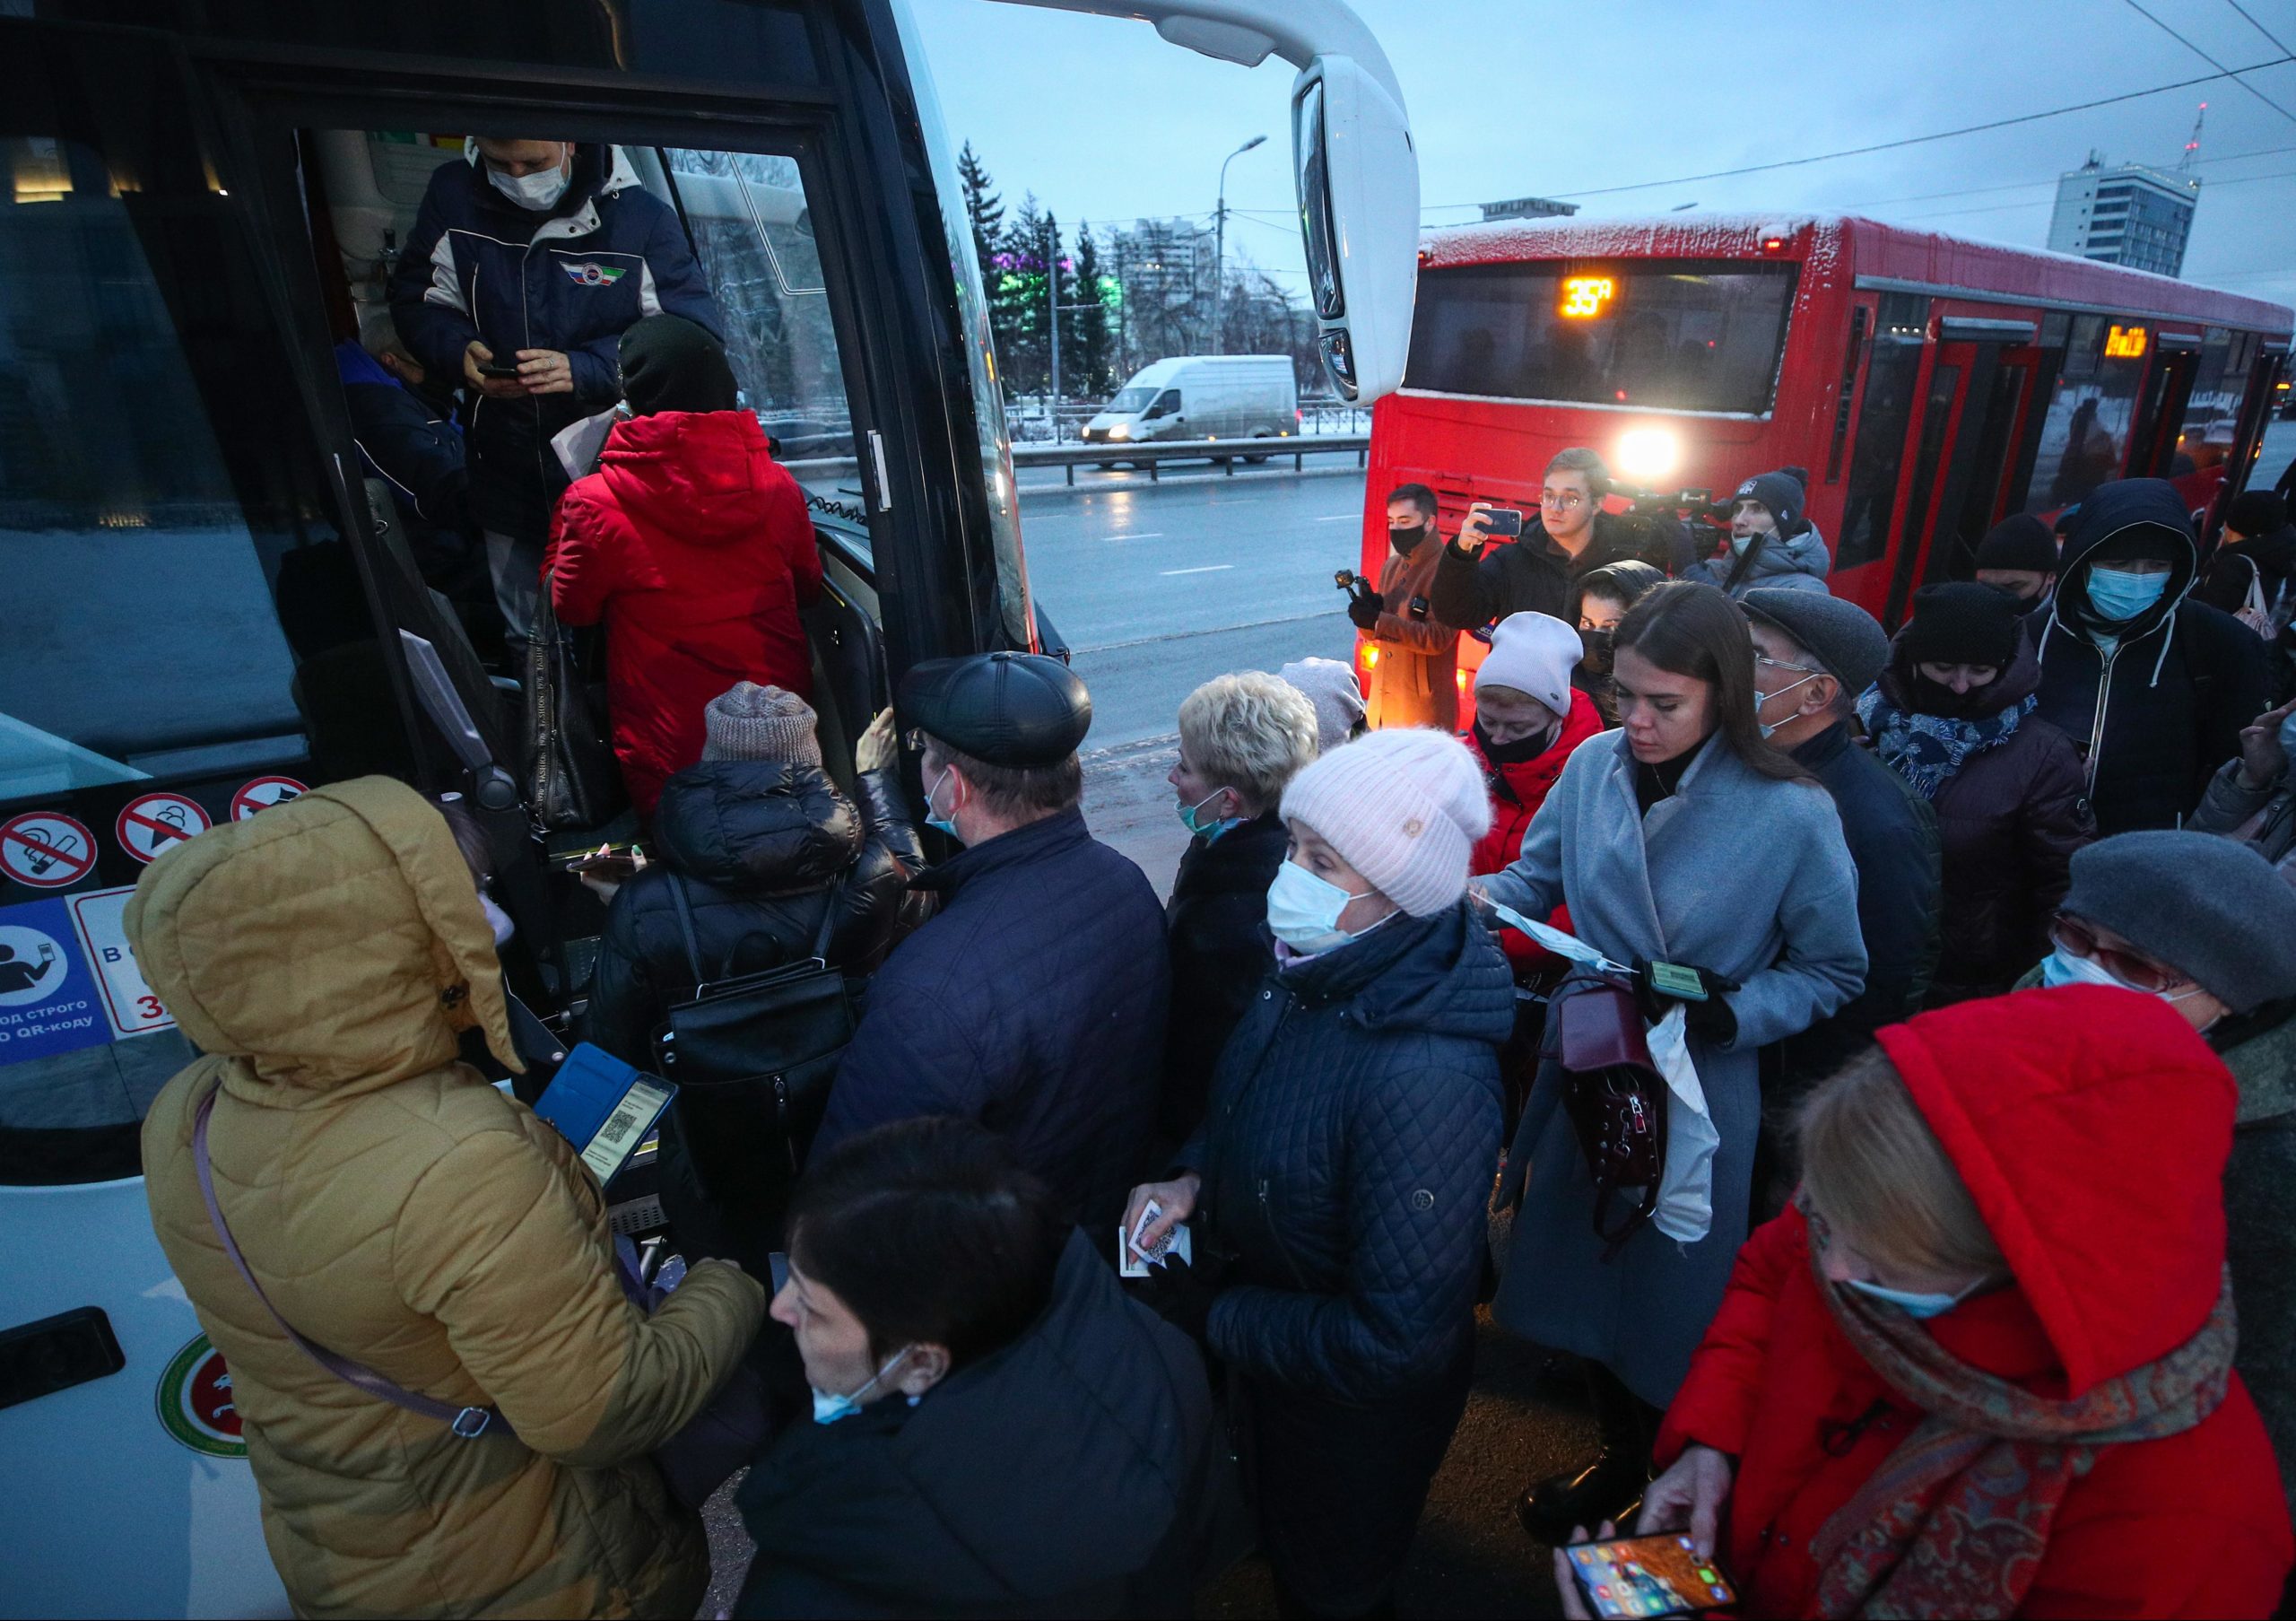 22 ноября 2016 г. Пассажиры общественного транспорта. Люди в автобусе. Пассажиры в автобусах Казани. Скандал в автобусе.